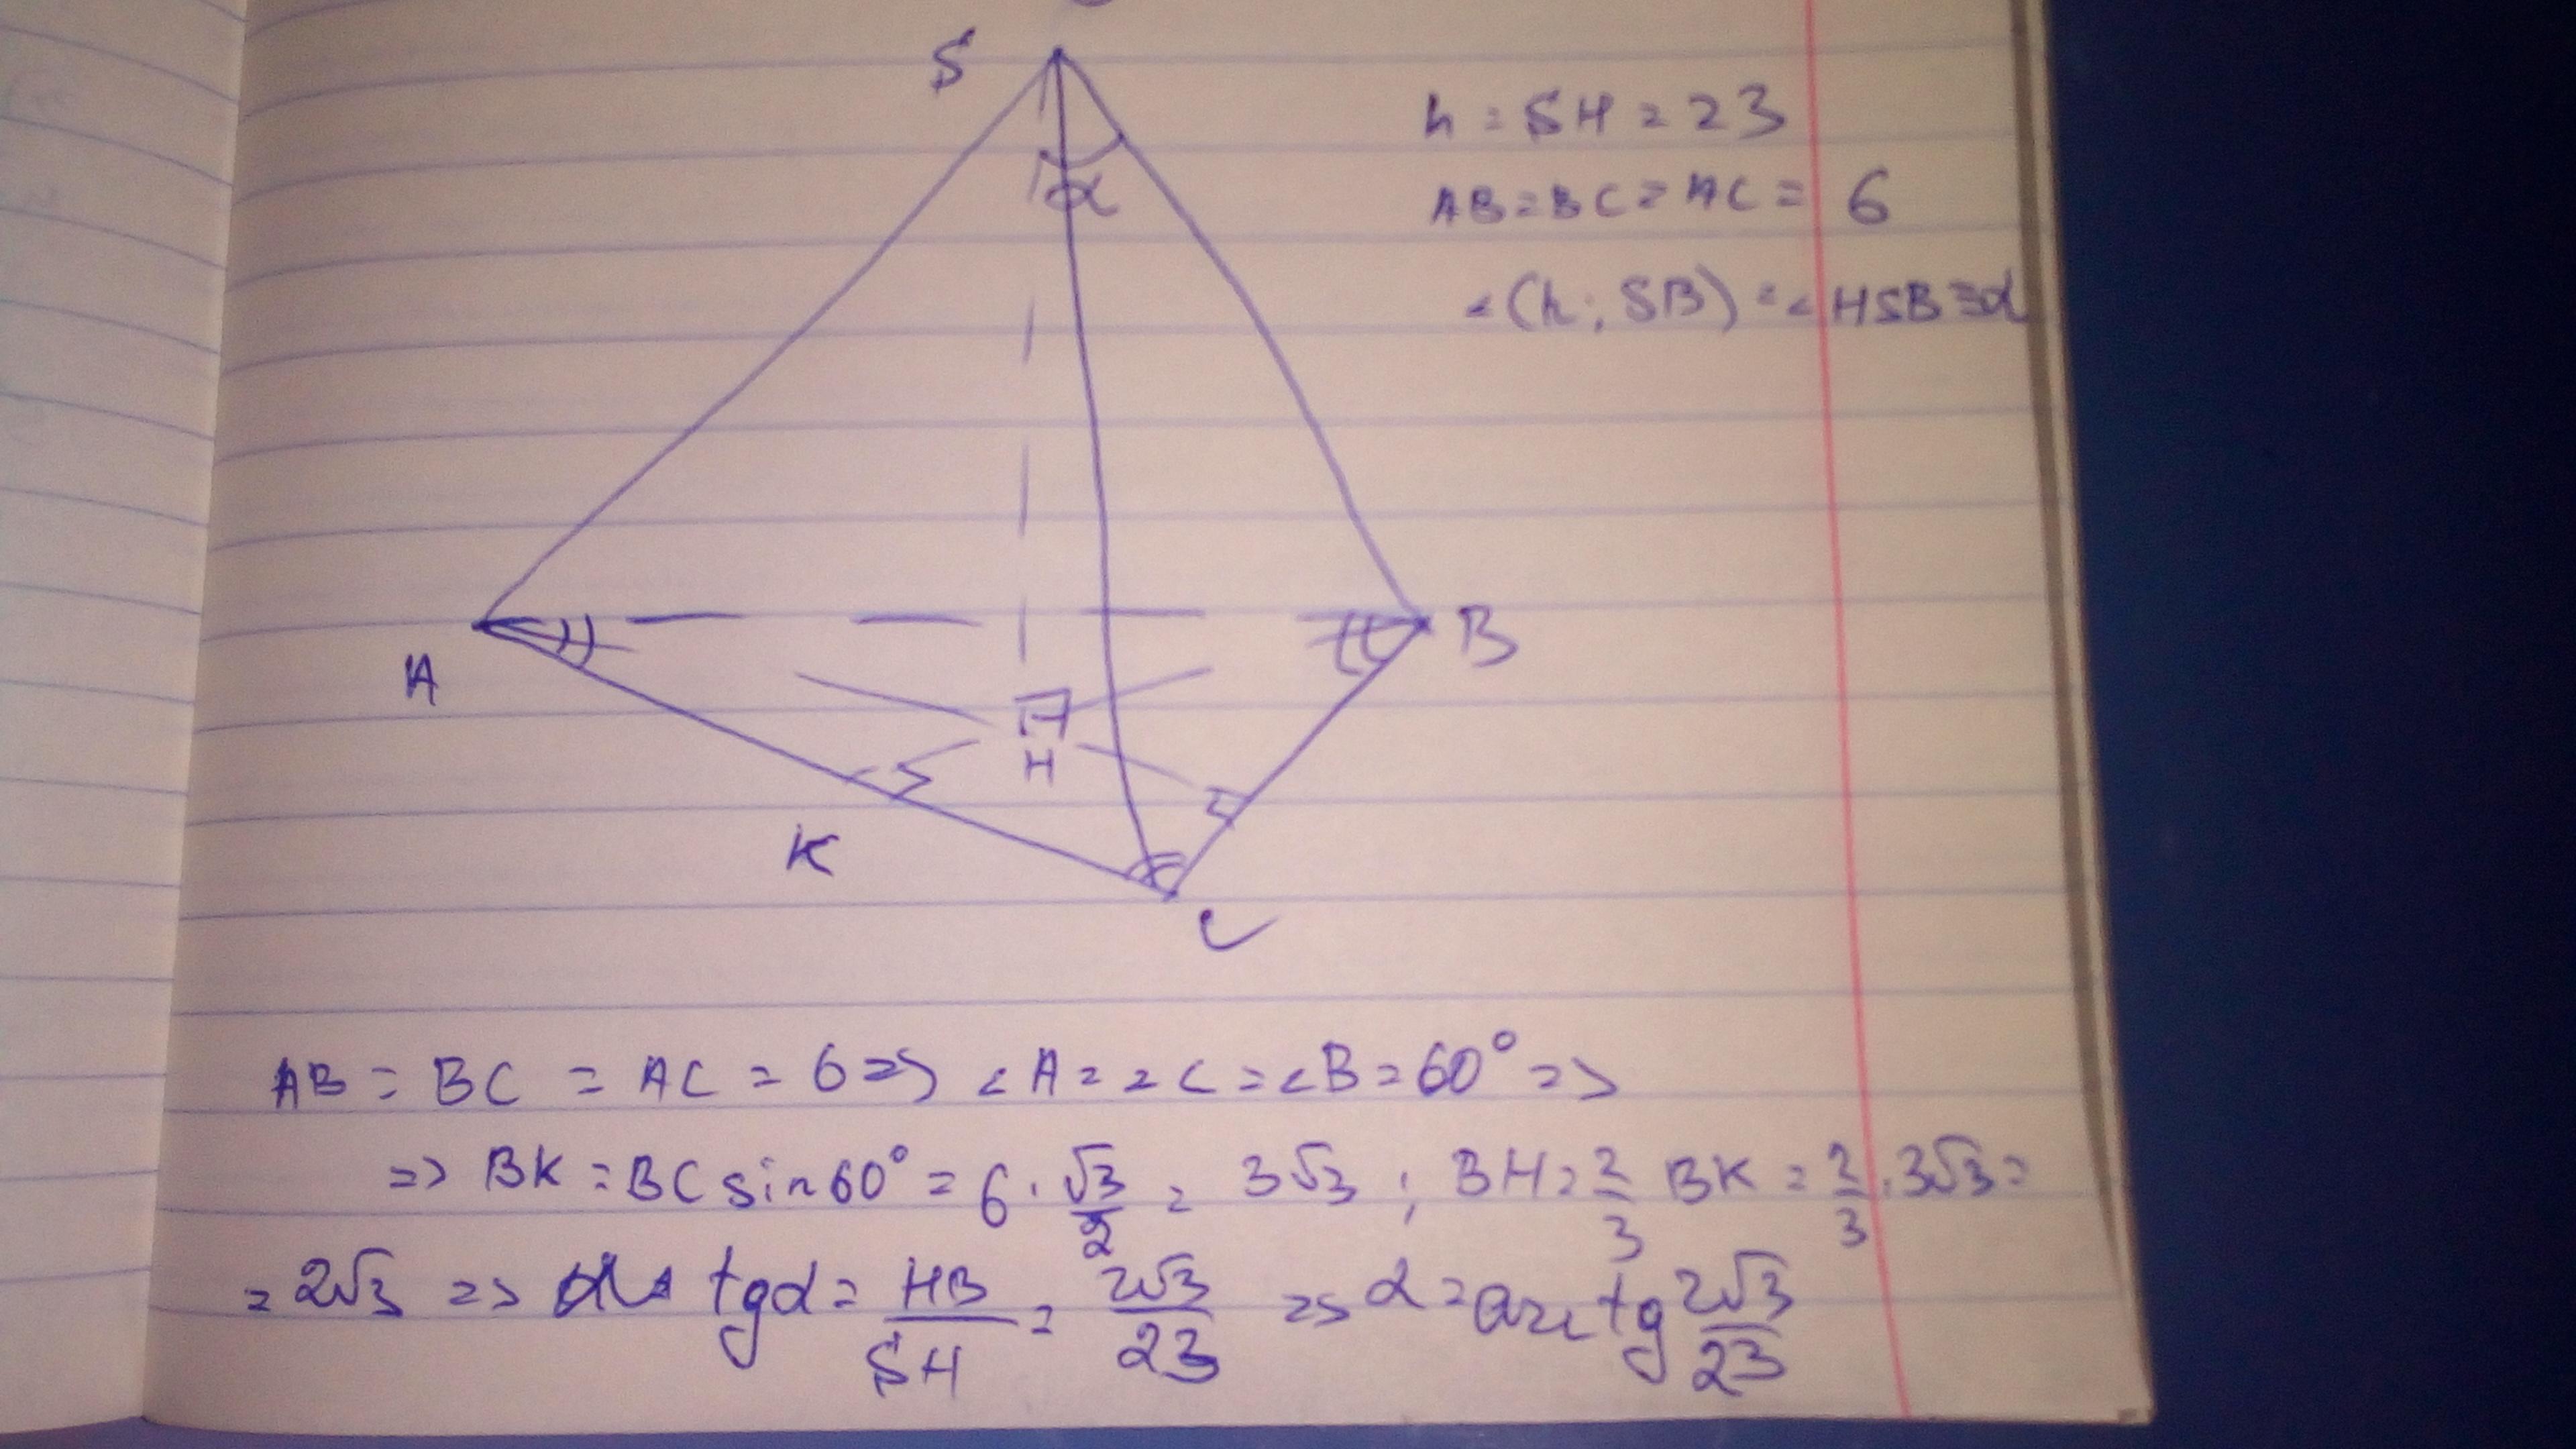 Правильная треугольная пирамида с вершиной s